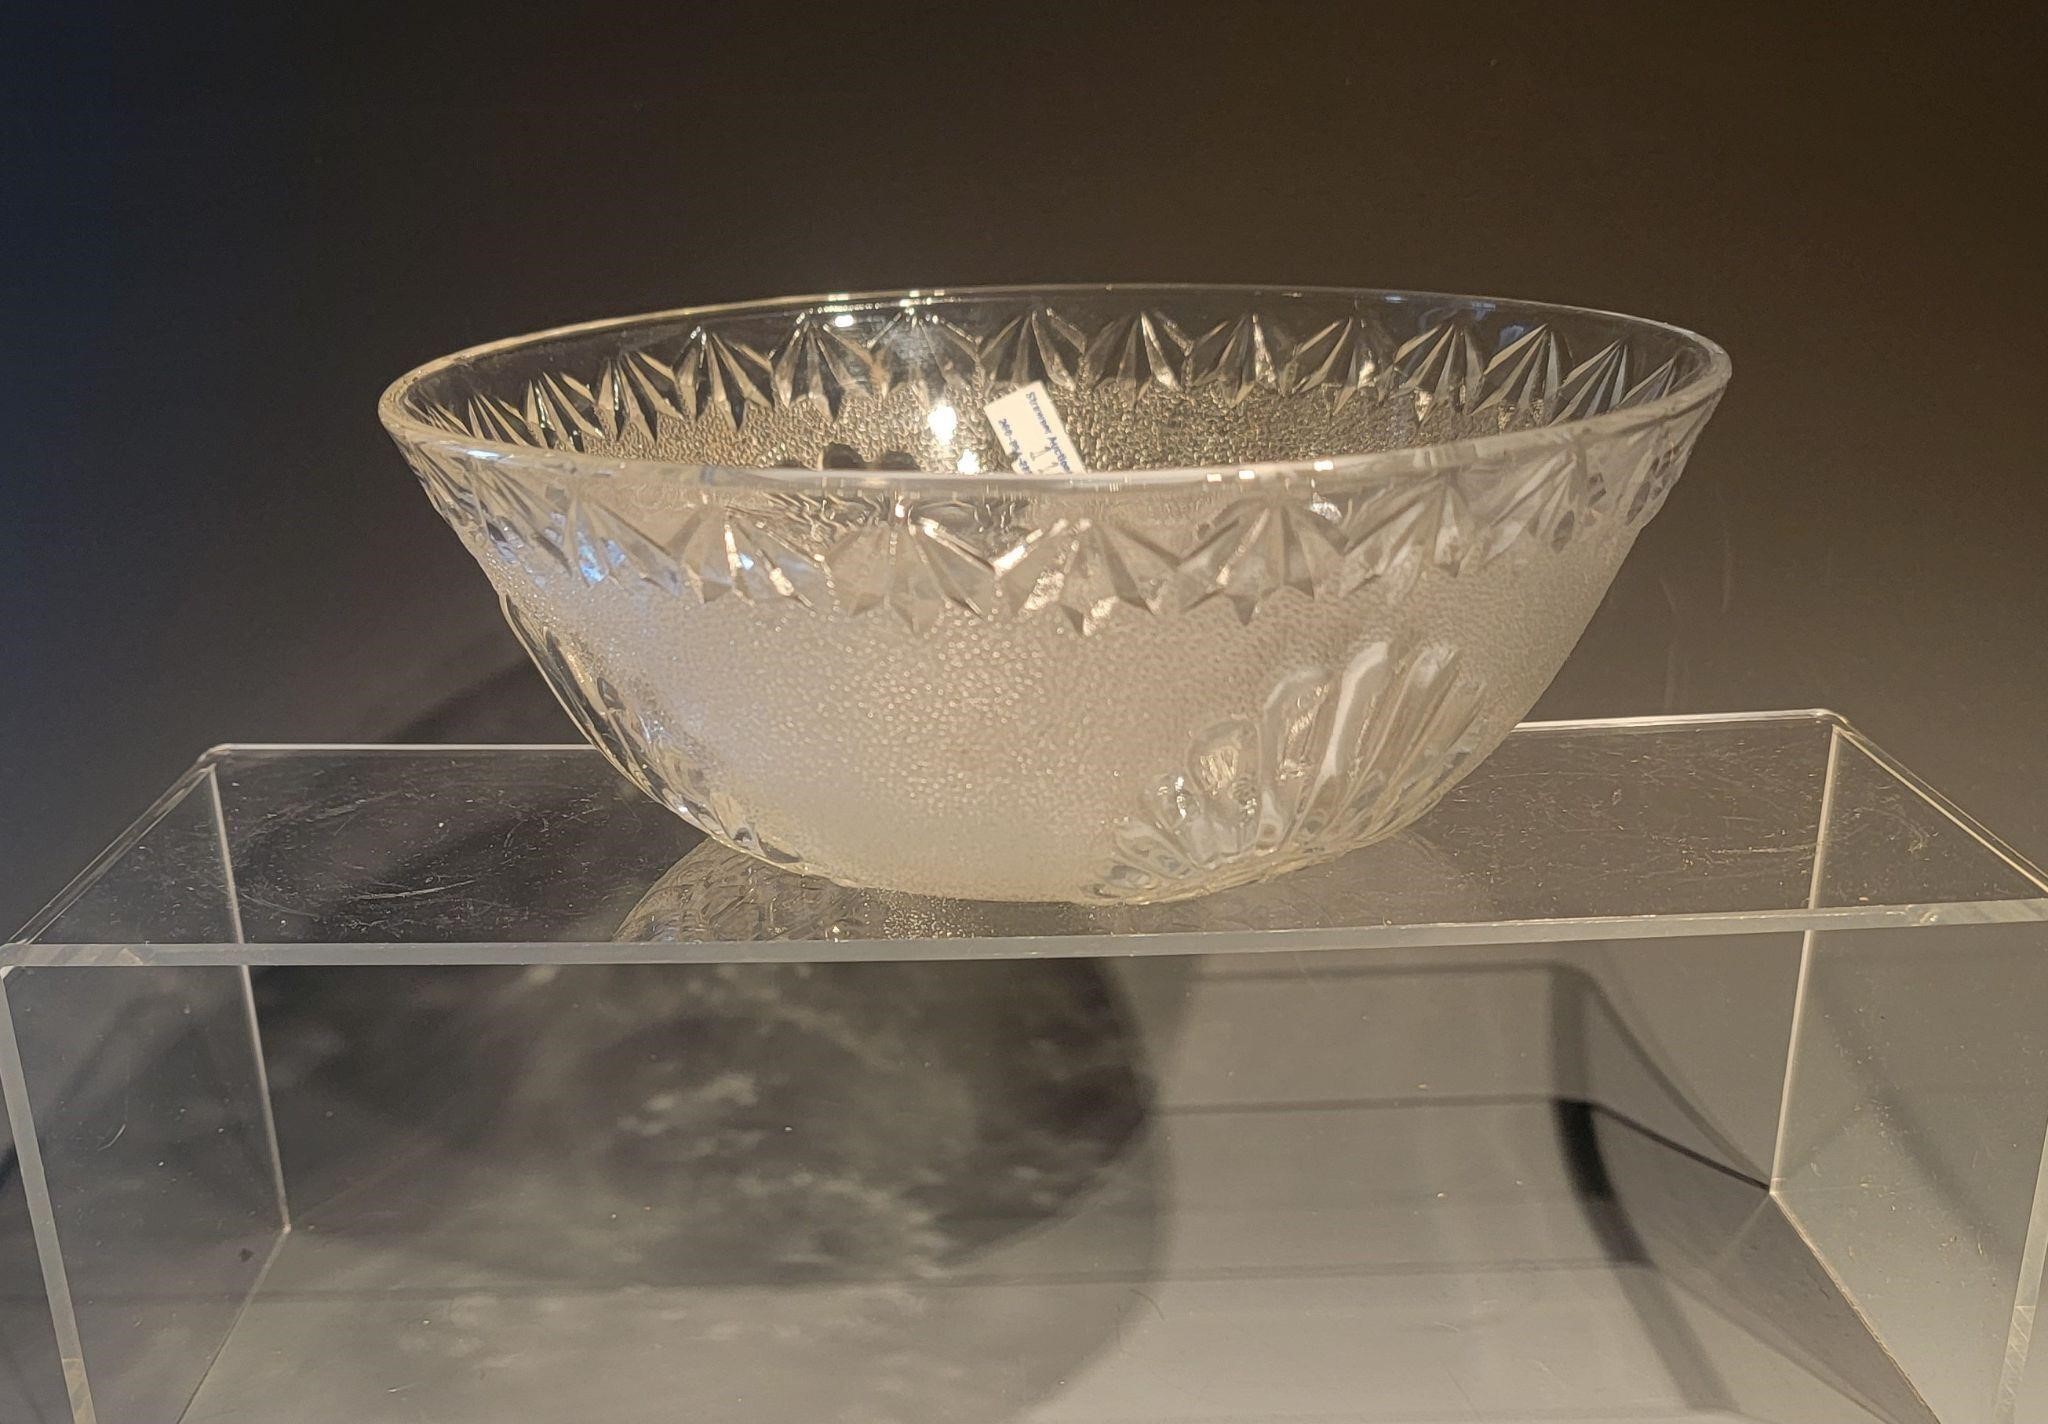 glass bowl - 8" bowl